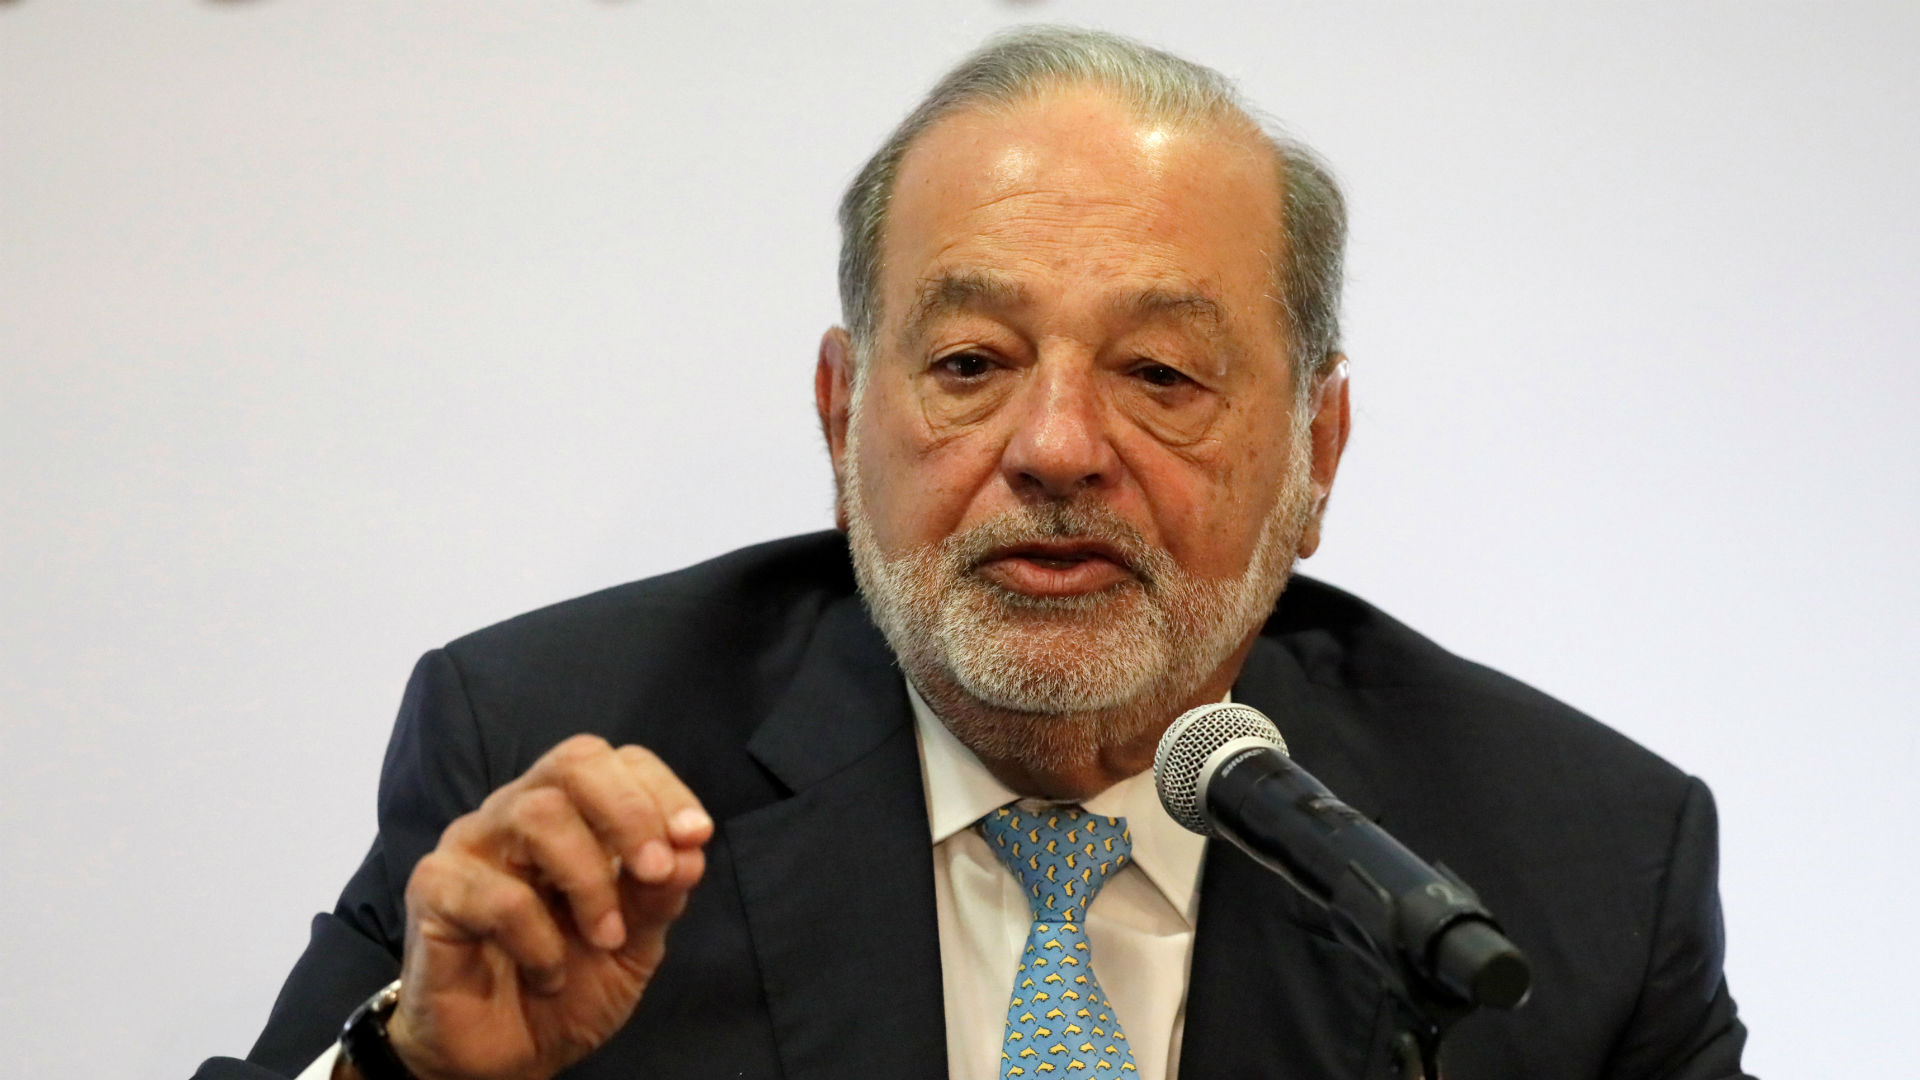 Carlos Slim propone usar materiales mexicanos para ahorrar en costos del nuevo aeropuerto